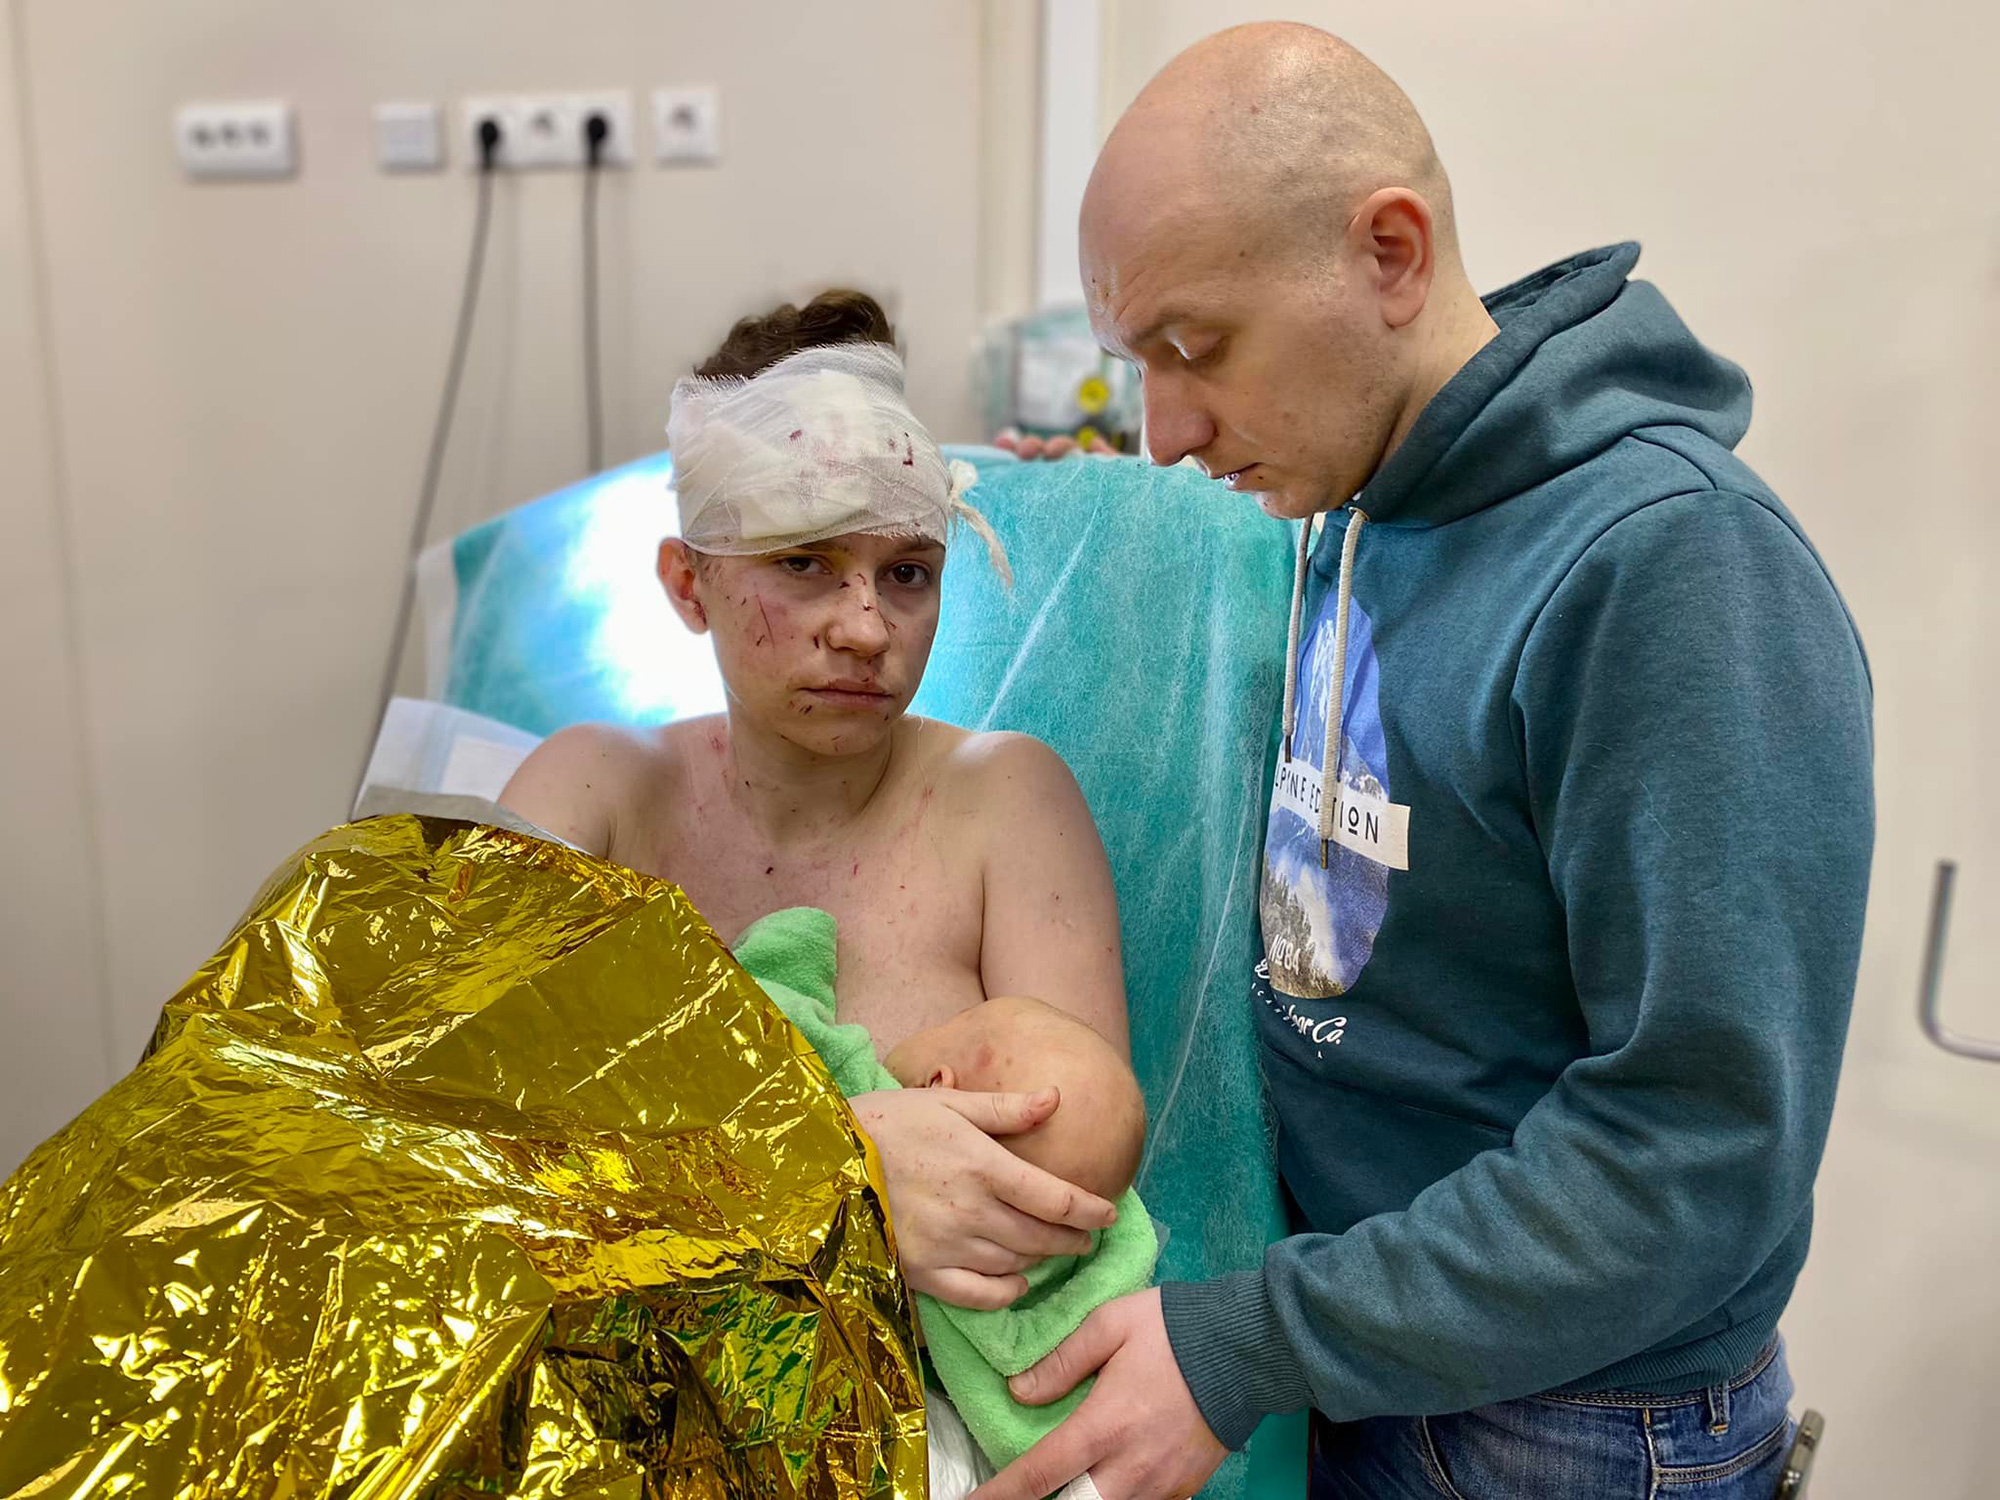 قال مستشفى أوكراني إن الأم تحمي طفلتها من القصف وتنقذها من الأذى